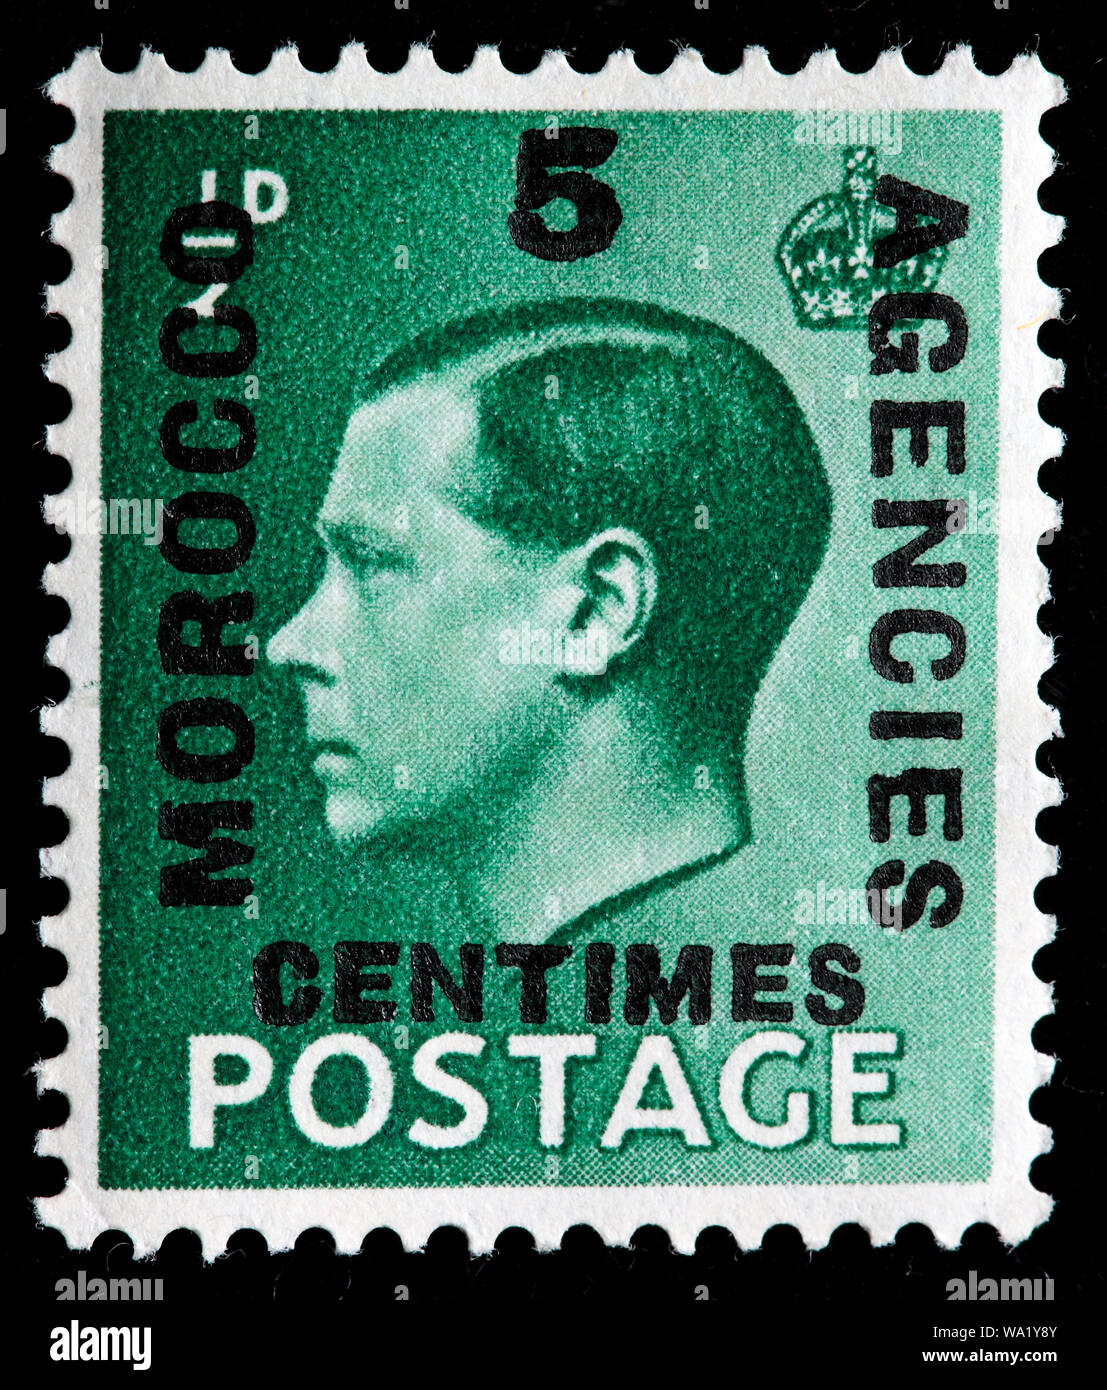 Le roi Édouard VIII (1894-1972), timbre-poste, UK, 1936 Banque D'Images